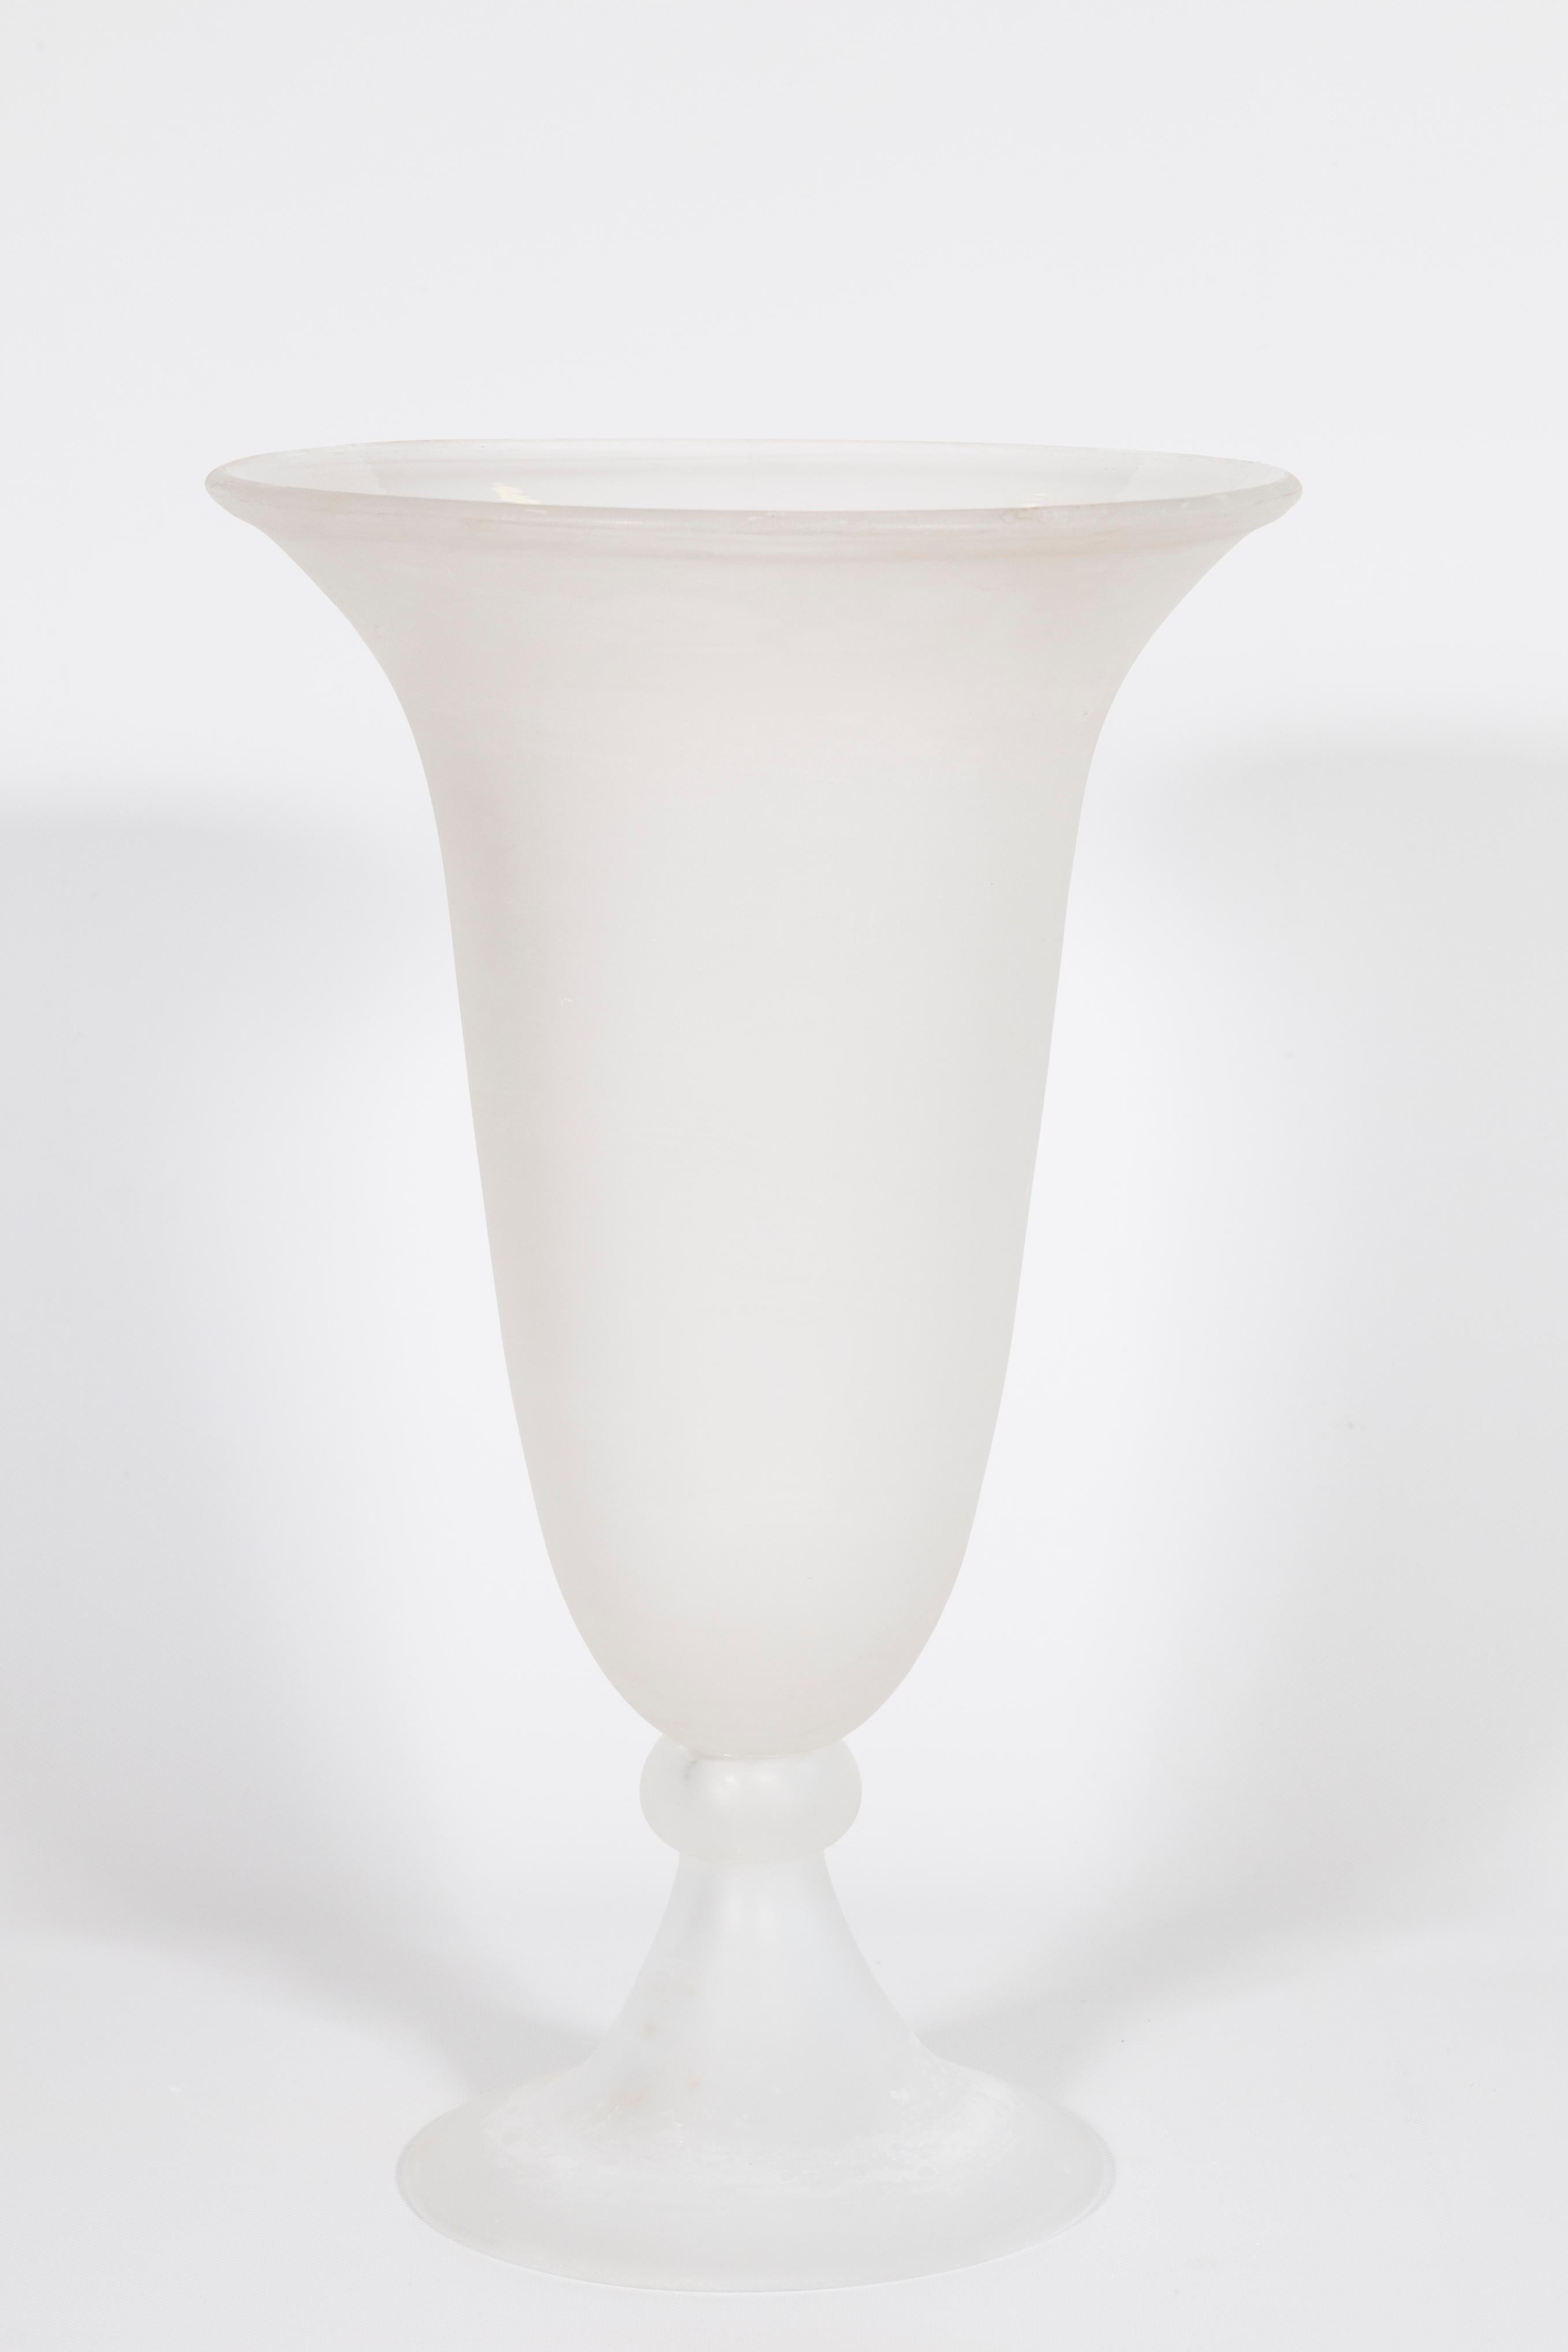 Reinweiße Vase im Cenedese-Stil aus geblasenem Murano-Glas Venedig Italien 1990er Jahre.
Diese in den 1990er Jahren vollständig von Hand gefertigte Vase ist ein originelles Kunstwerk von Cenedese, einem der berühmtesten venezianischen Glasbläser auf